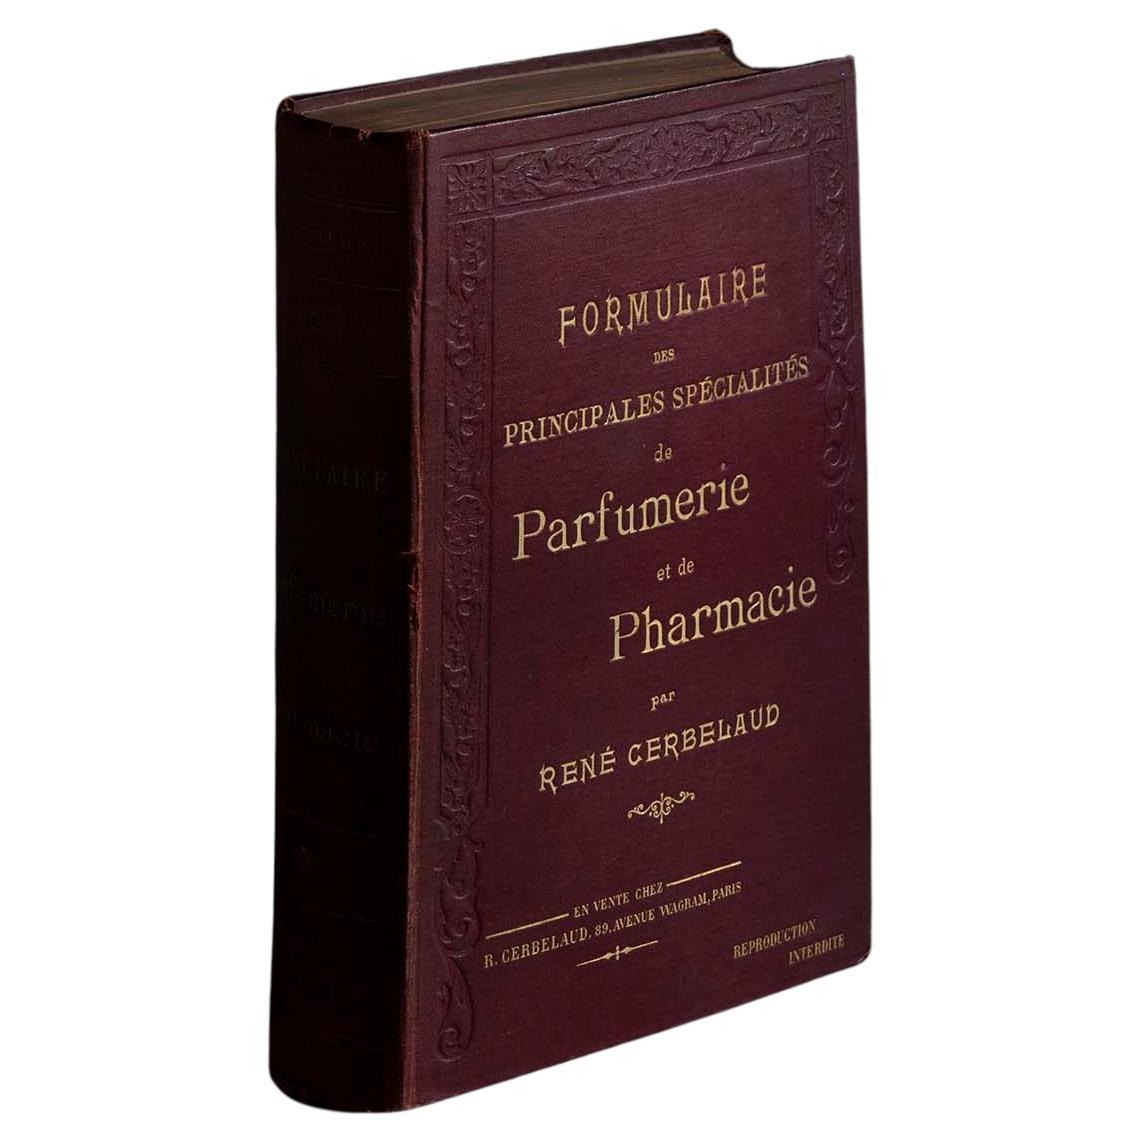 René Cerbelaud's Perfumery and Pharmacy Book For Sale